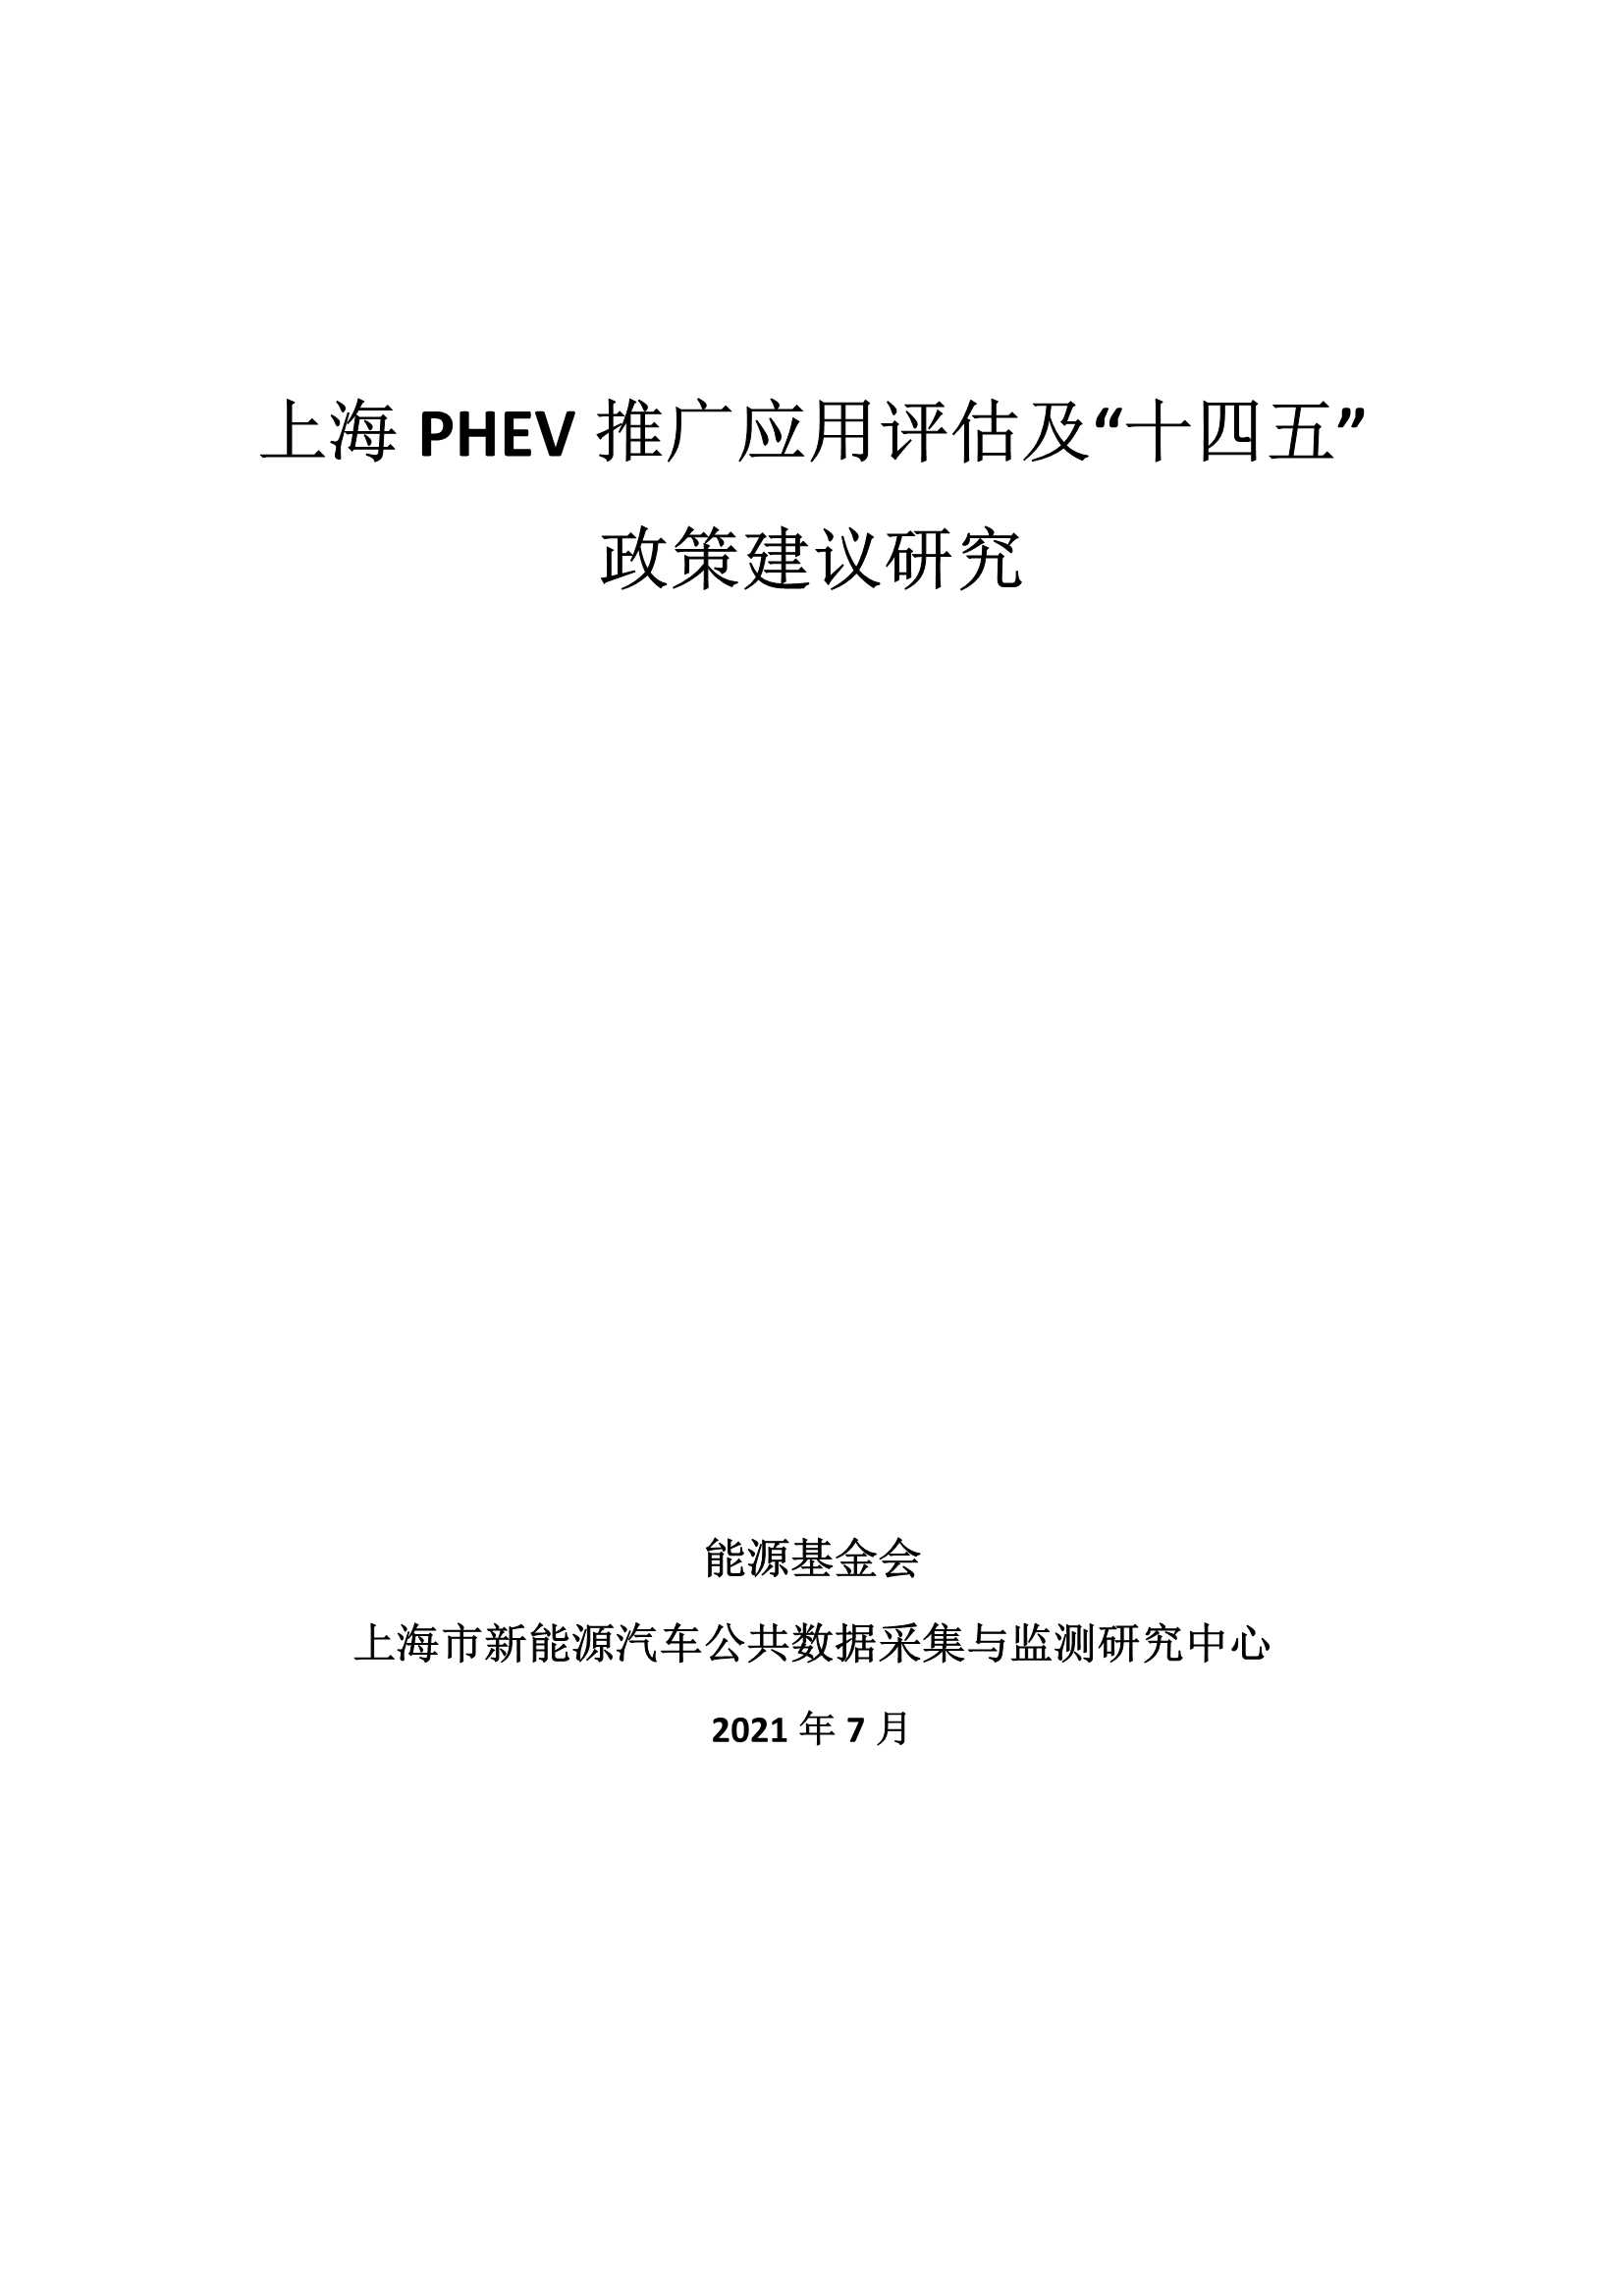 能源基金会-上海PHEV推广应用评估及“十四五”政策建议研究-2022.03-40页